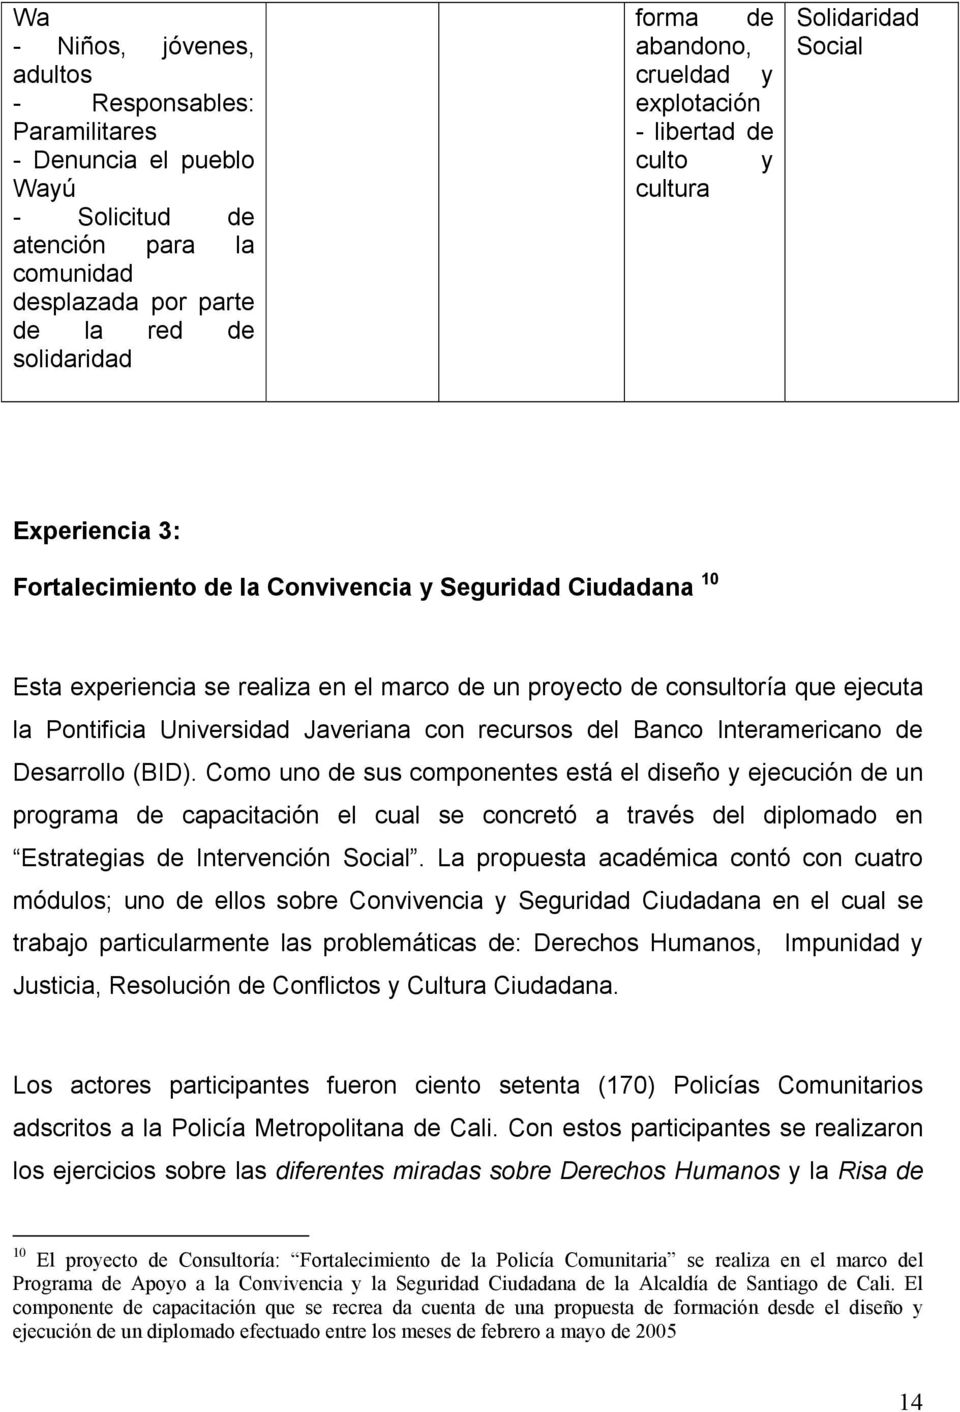 proyecto de consultoría que ejecuta la Pontificia Universidad Javeriana con recursos del Banco Interamericano de Desarrollo (BID).